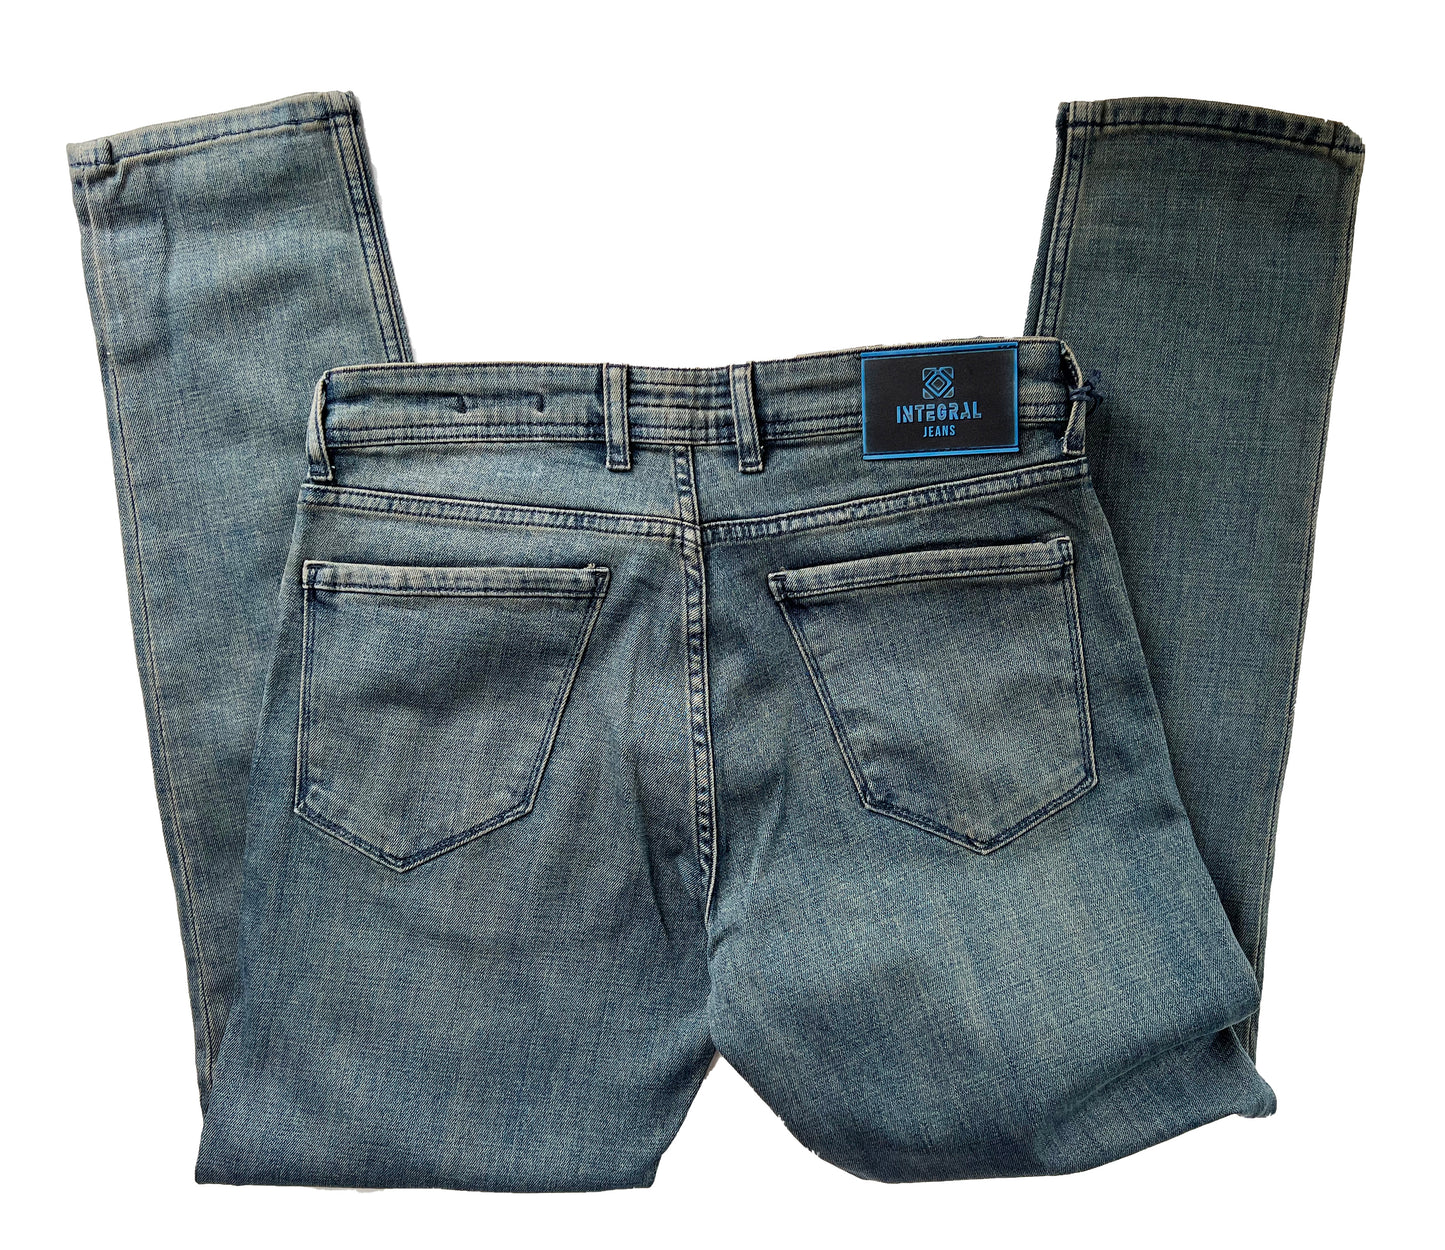 Men's Slim Fit Comfortable Jeans, Trousers- Elgin